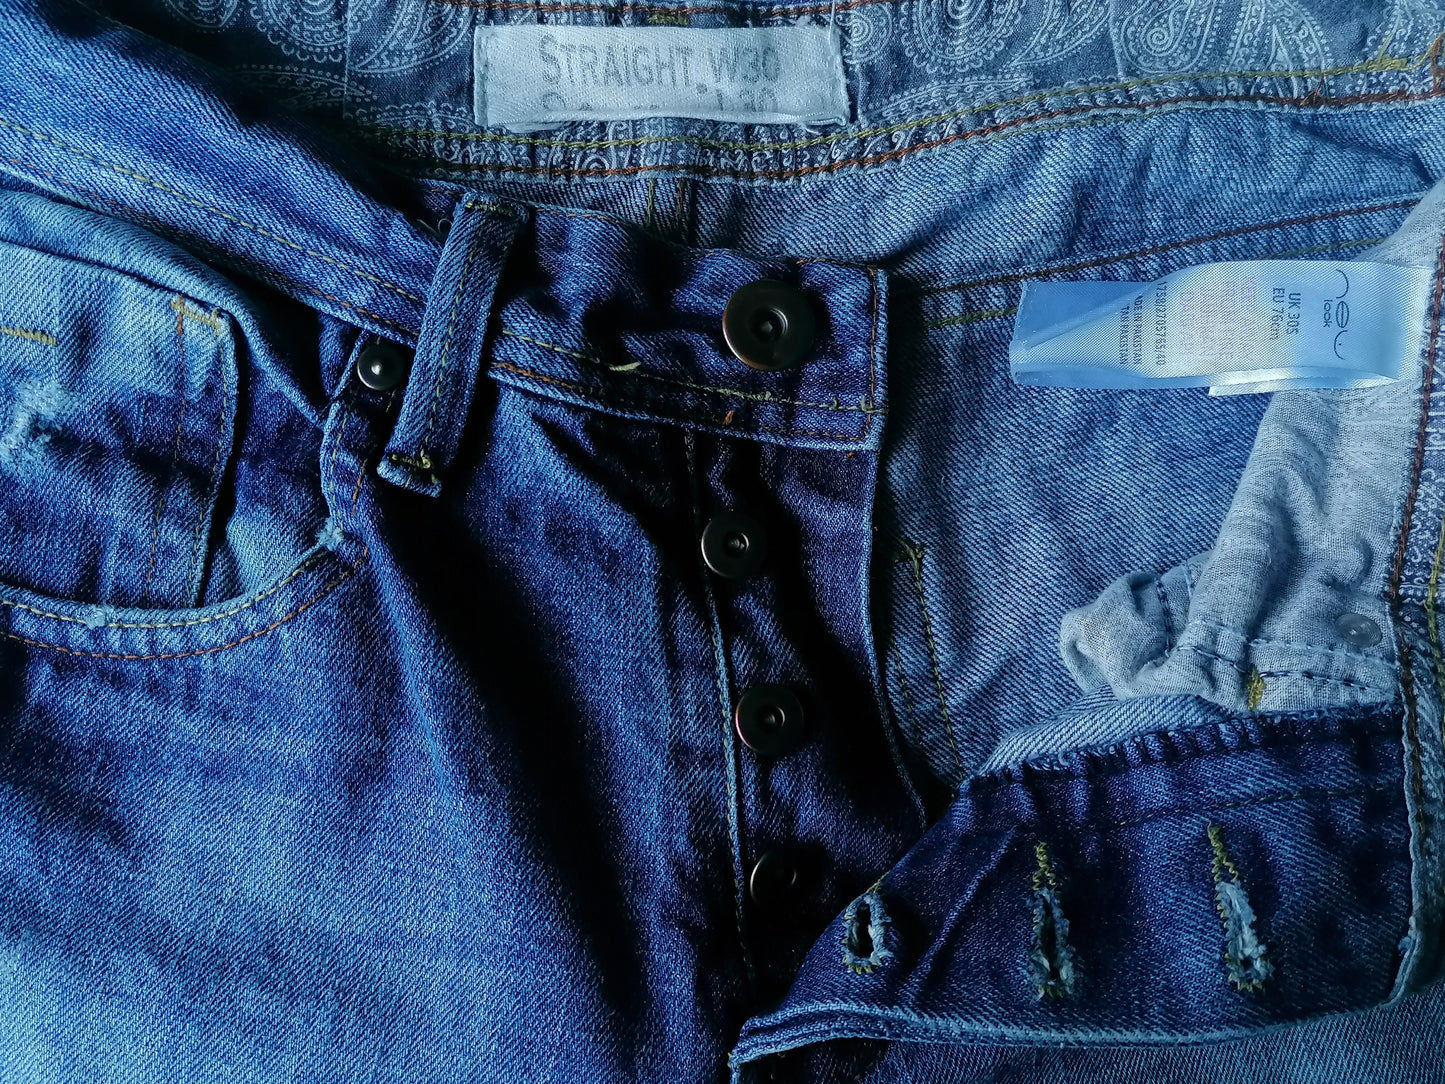 Neue Look Jeans. Blau gefärbt. Größe W30 - L30. Gerade geschnitten.